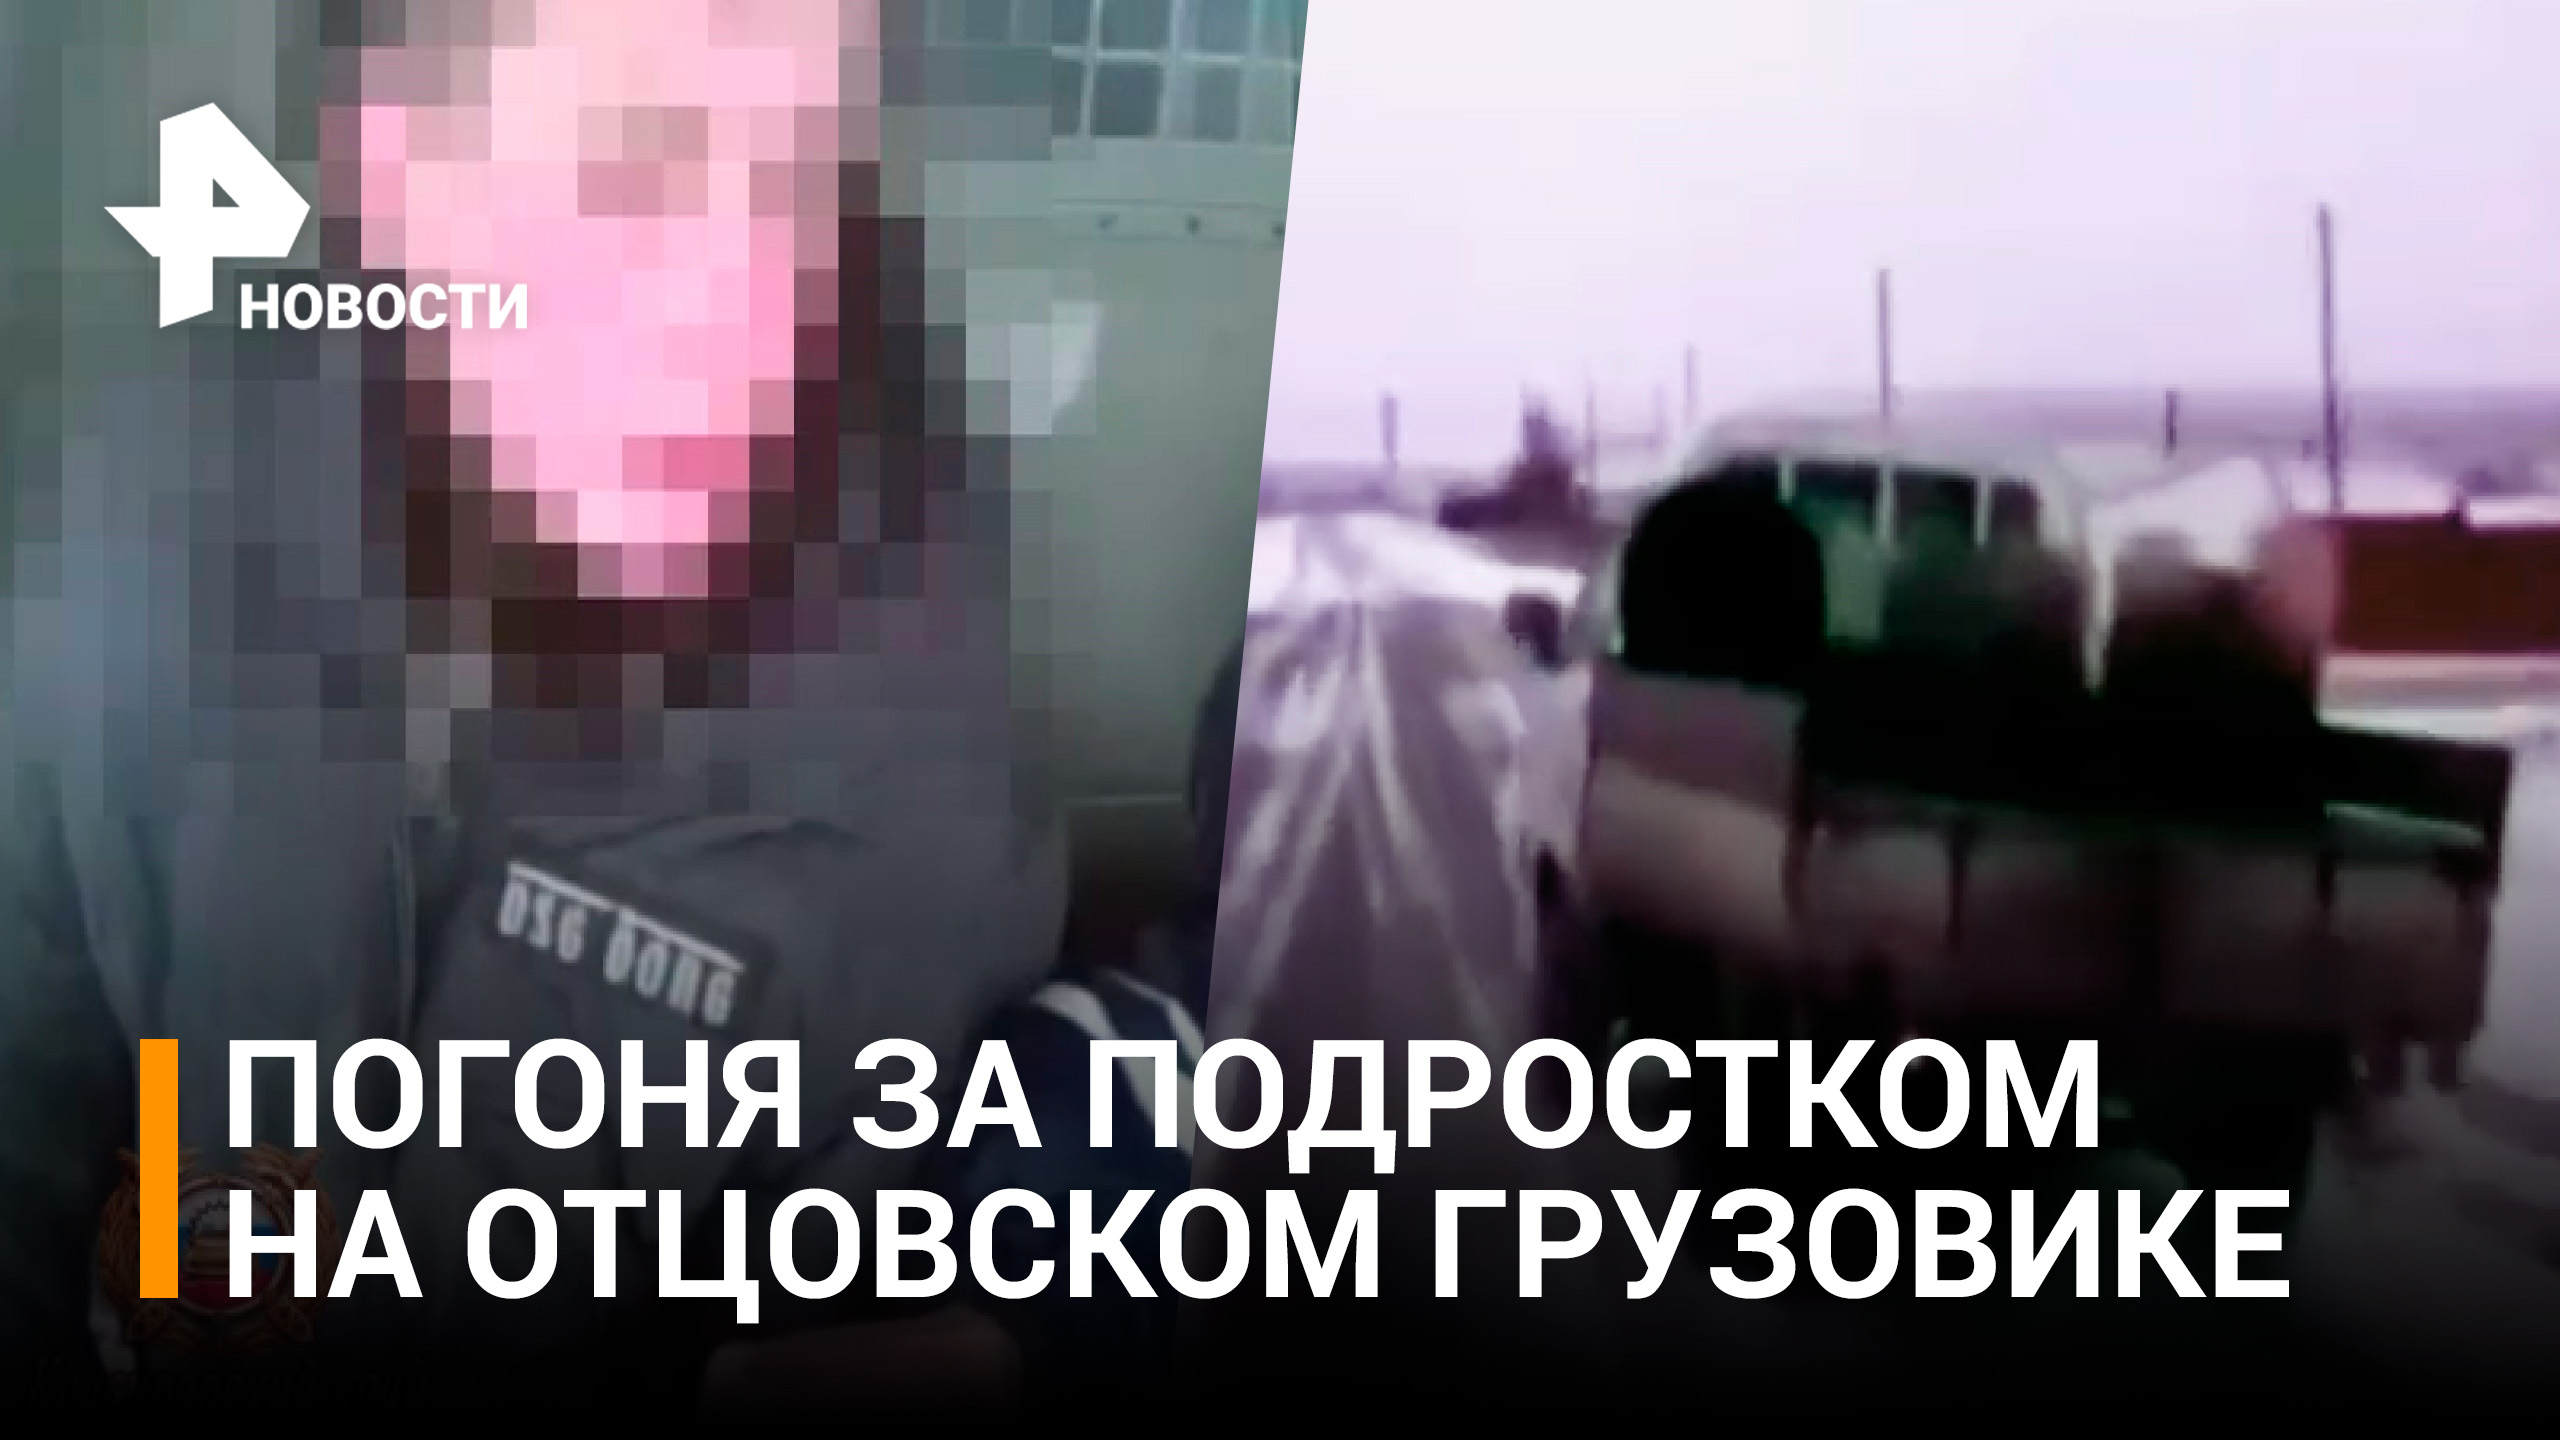 В Красноярском крае 15-летний подросток на отцовском грузовике пытался скрыться от полиции